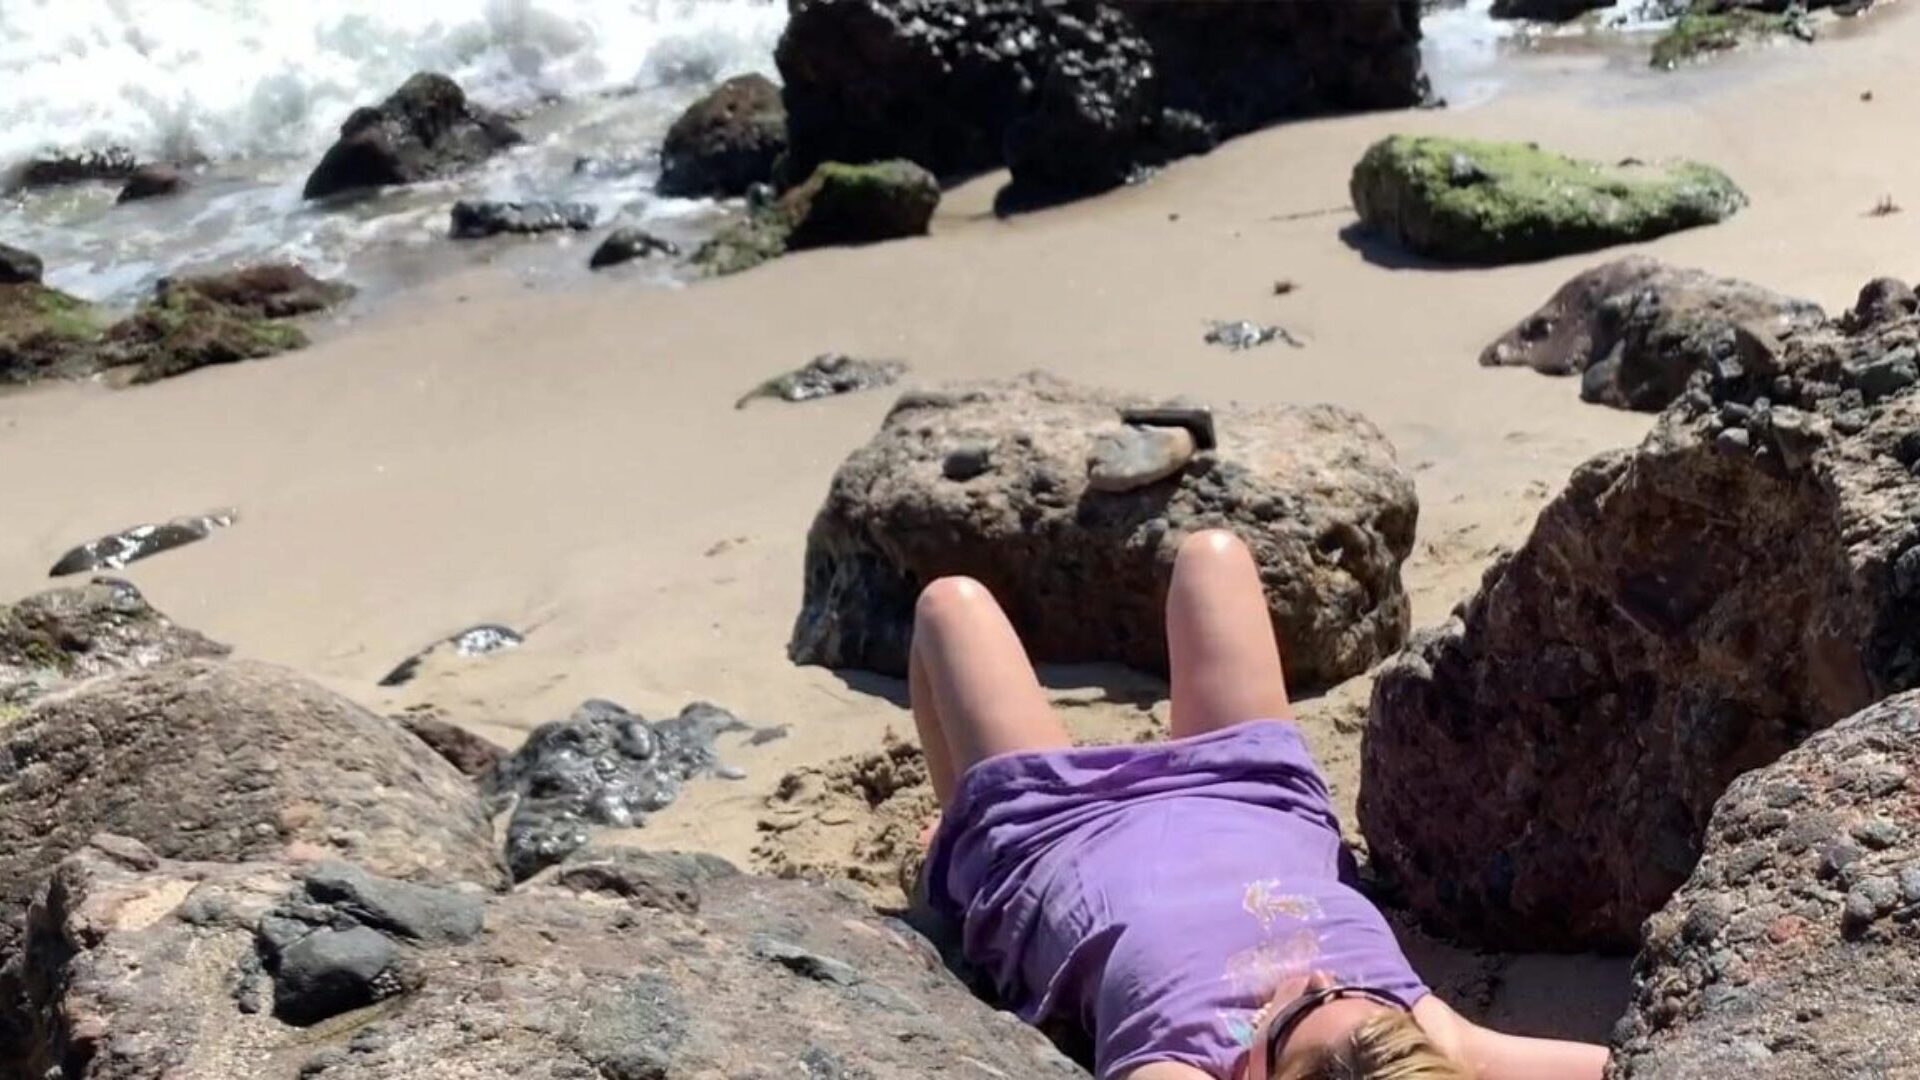 rubia voluptuosa tomando el sol desnuda en la playa copula transeúnte rubia sexy bombeando muchacho en la playa captado por la cámara